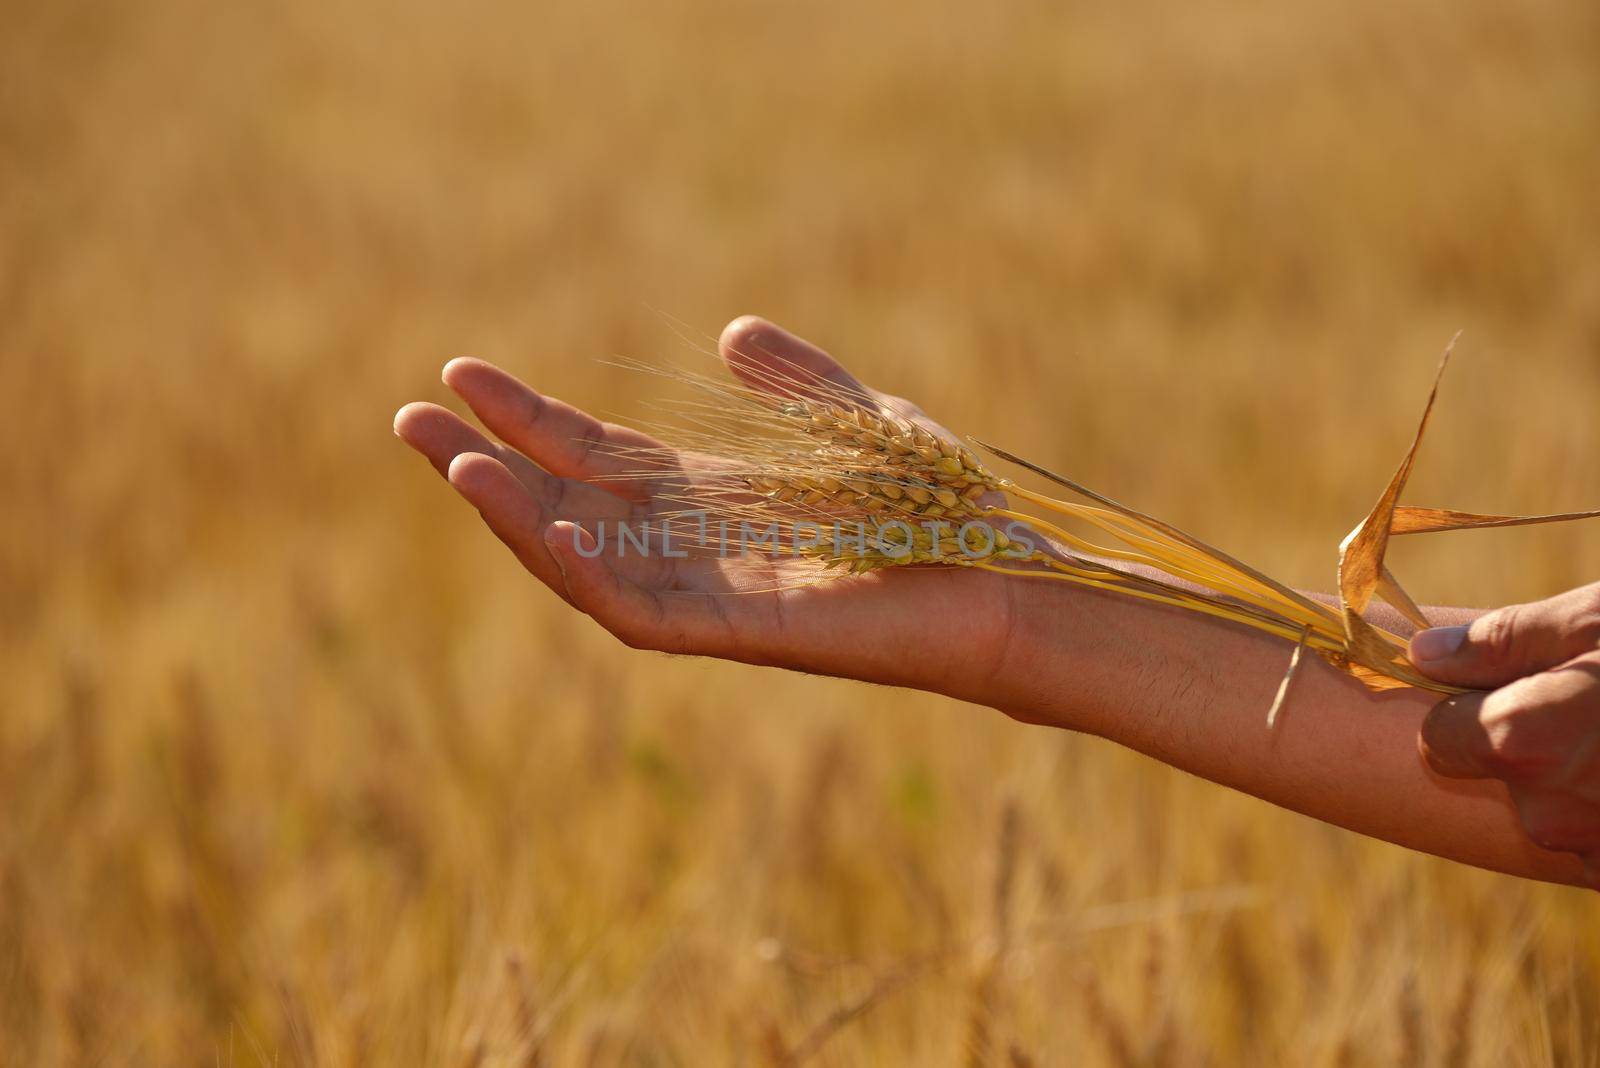 hand in wheat field by dotshock